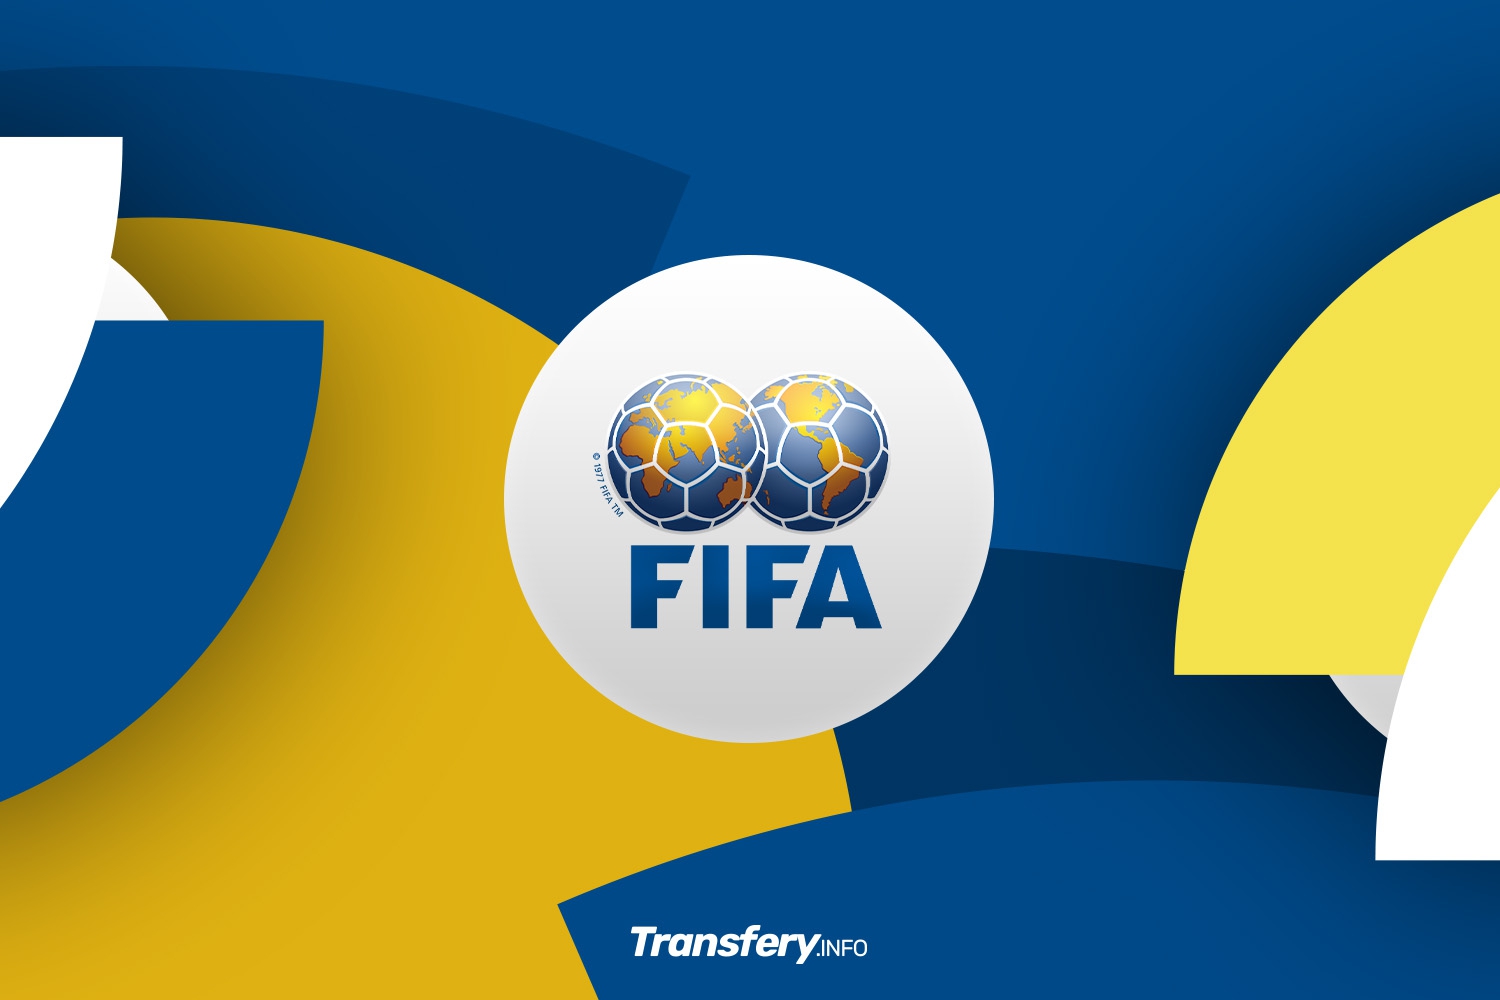 OFICJALNIE: FIFA poszła śladem UEFA. Rosja U-17 dopuszczona do międzynarodowych rozgrywek